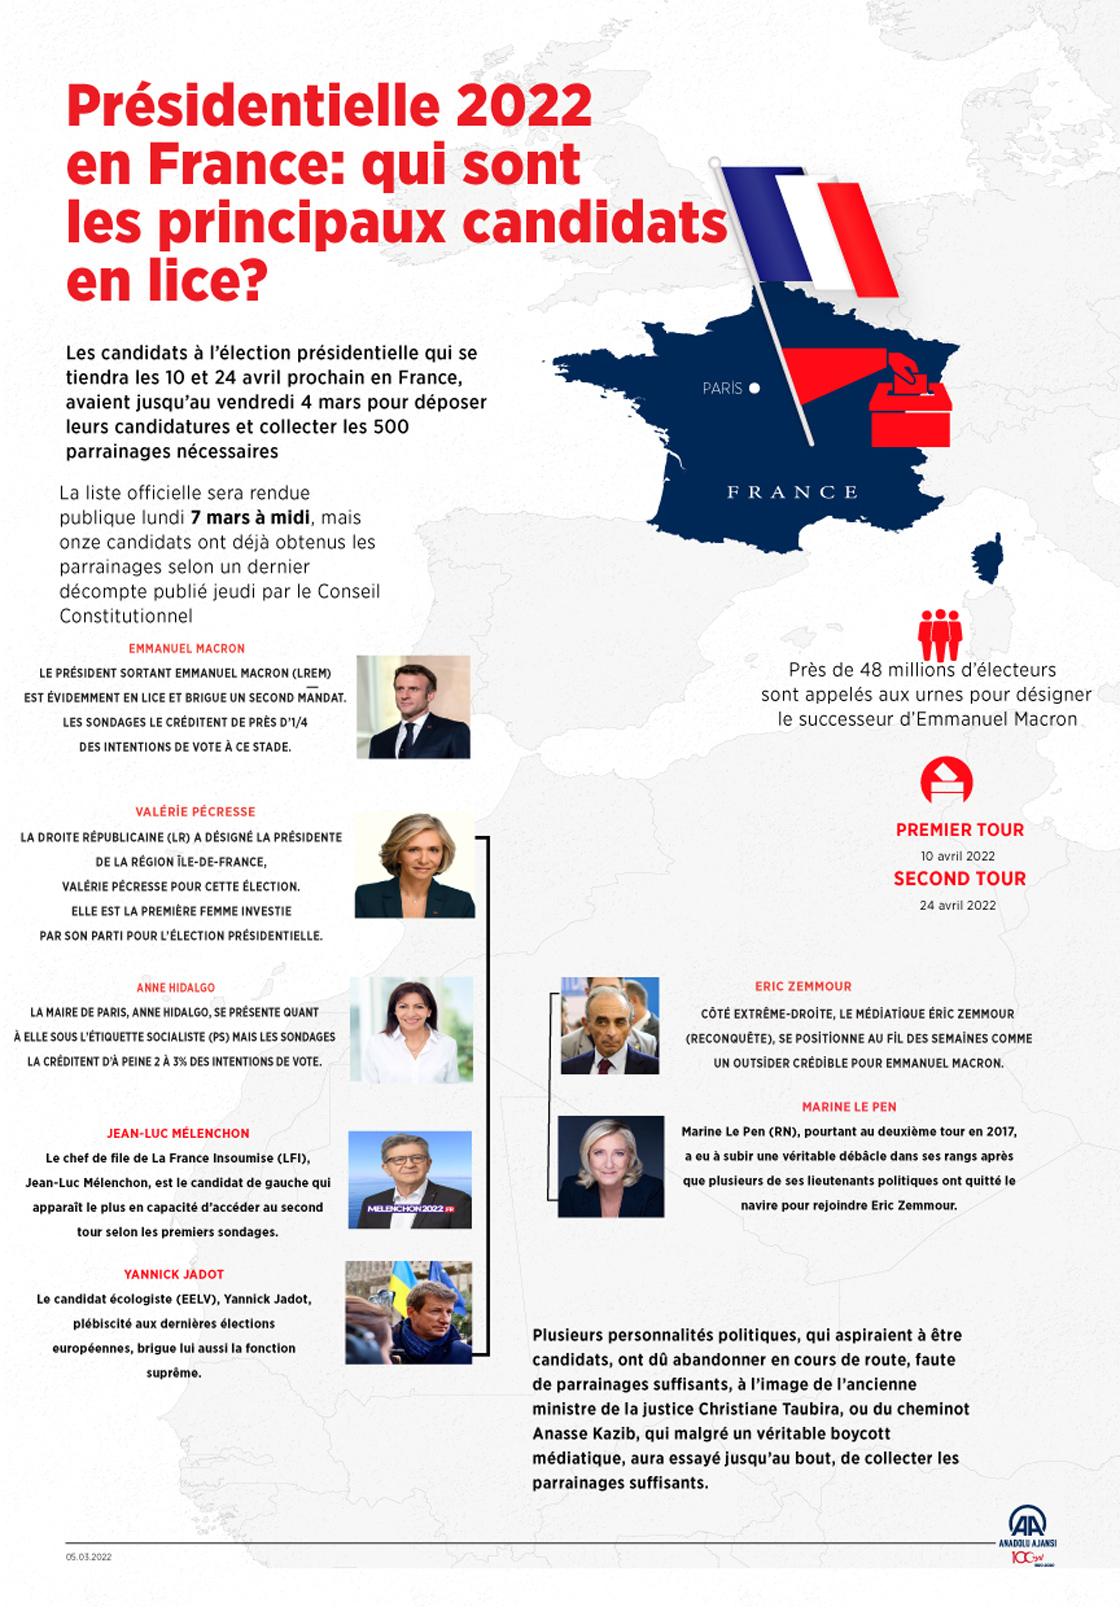 Présidentielle 2022 en France: qui sont les principaux candidats en lice?